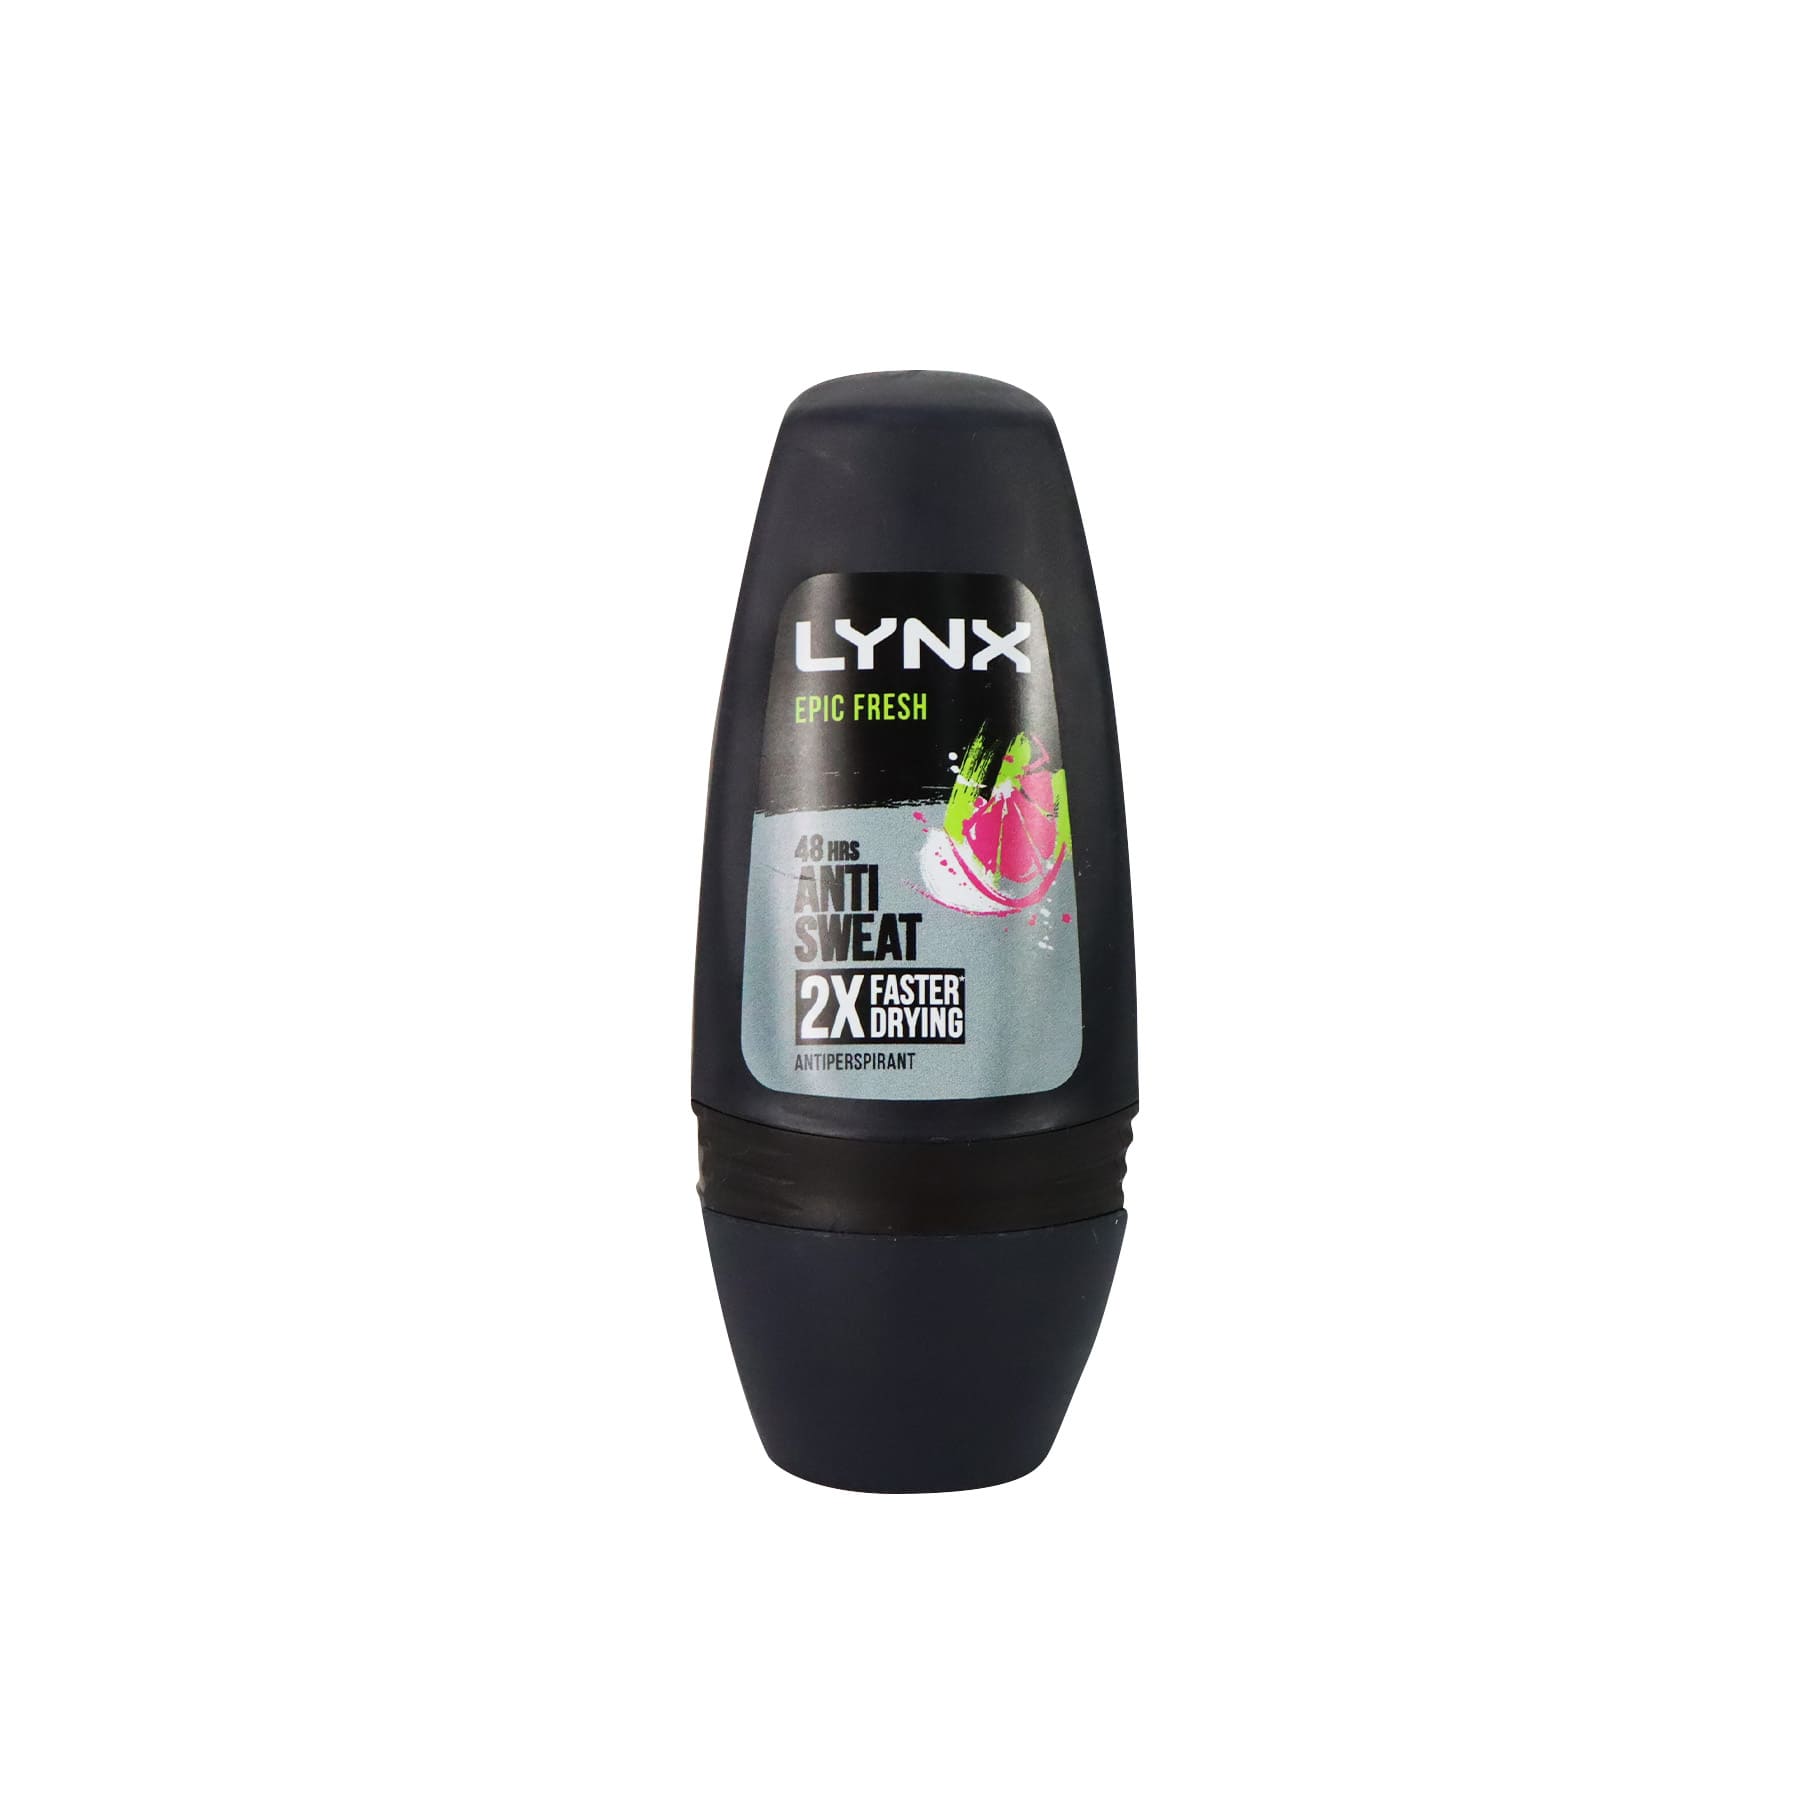 Lynx Anti-Sweat Roll On 50ml (Epic Fresh)